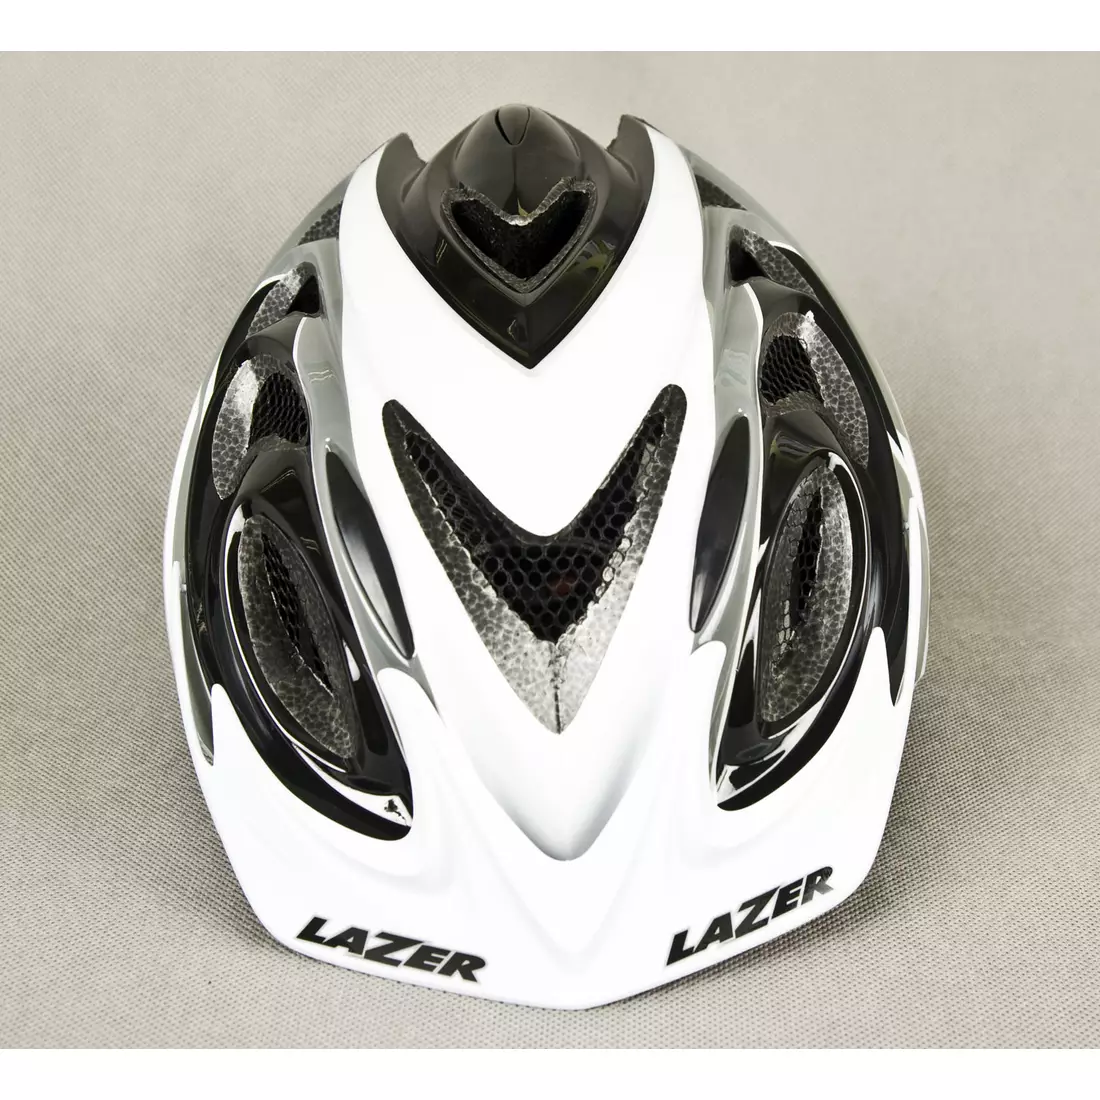 LAZER - 2X3M MTB-Fahrradhelm, Farbe: grau weiß schwarz